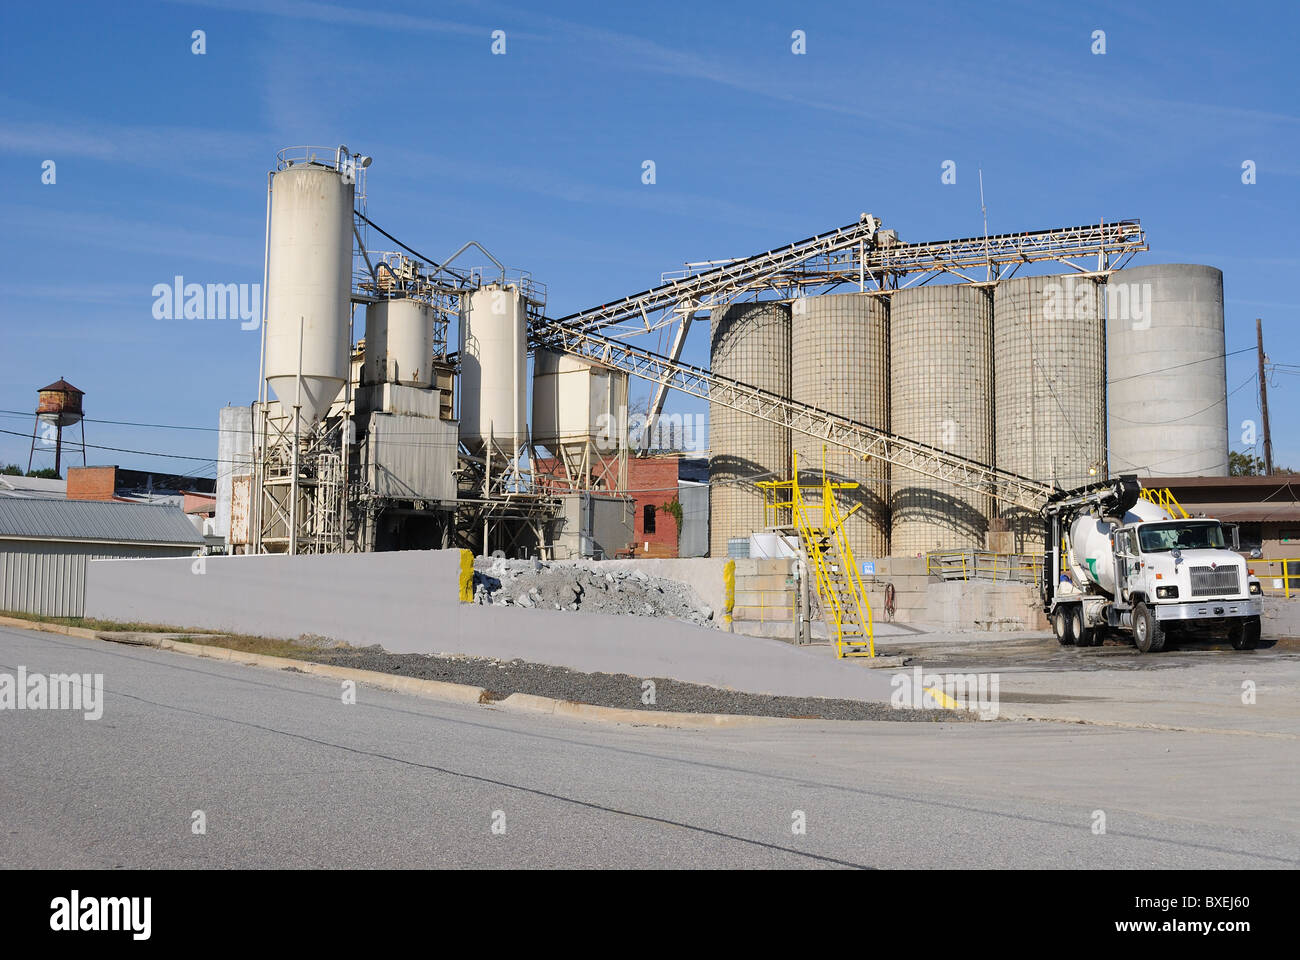 Un impianto di cemento con un carrello per il caricamento. Foto Stock